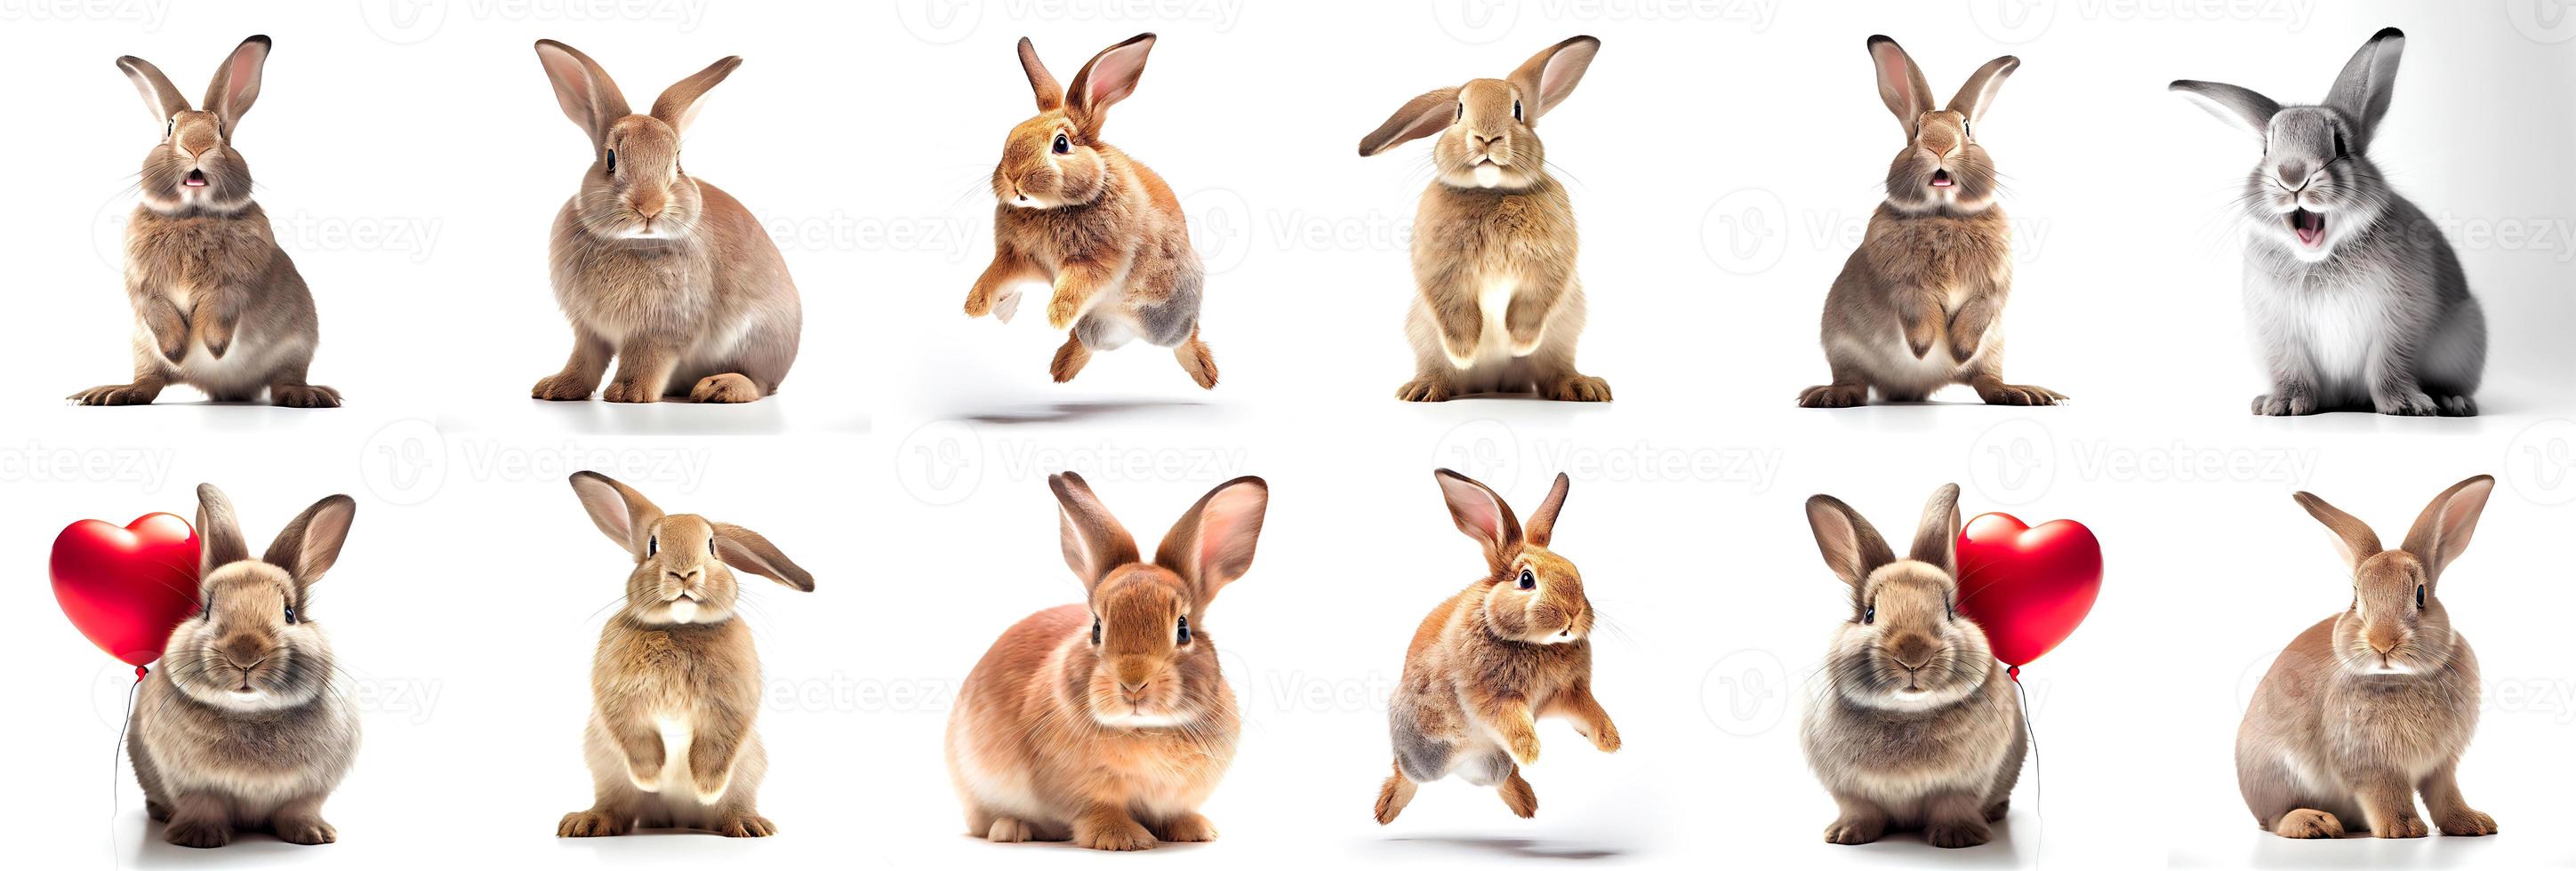 coelhos fofos durante o ano novo de 2023 coelhos em um fundo branco foto